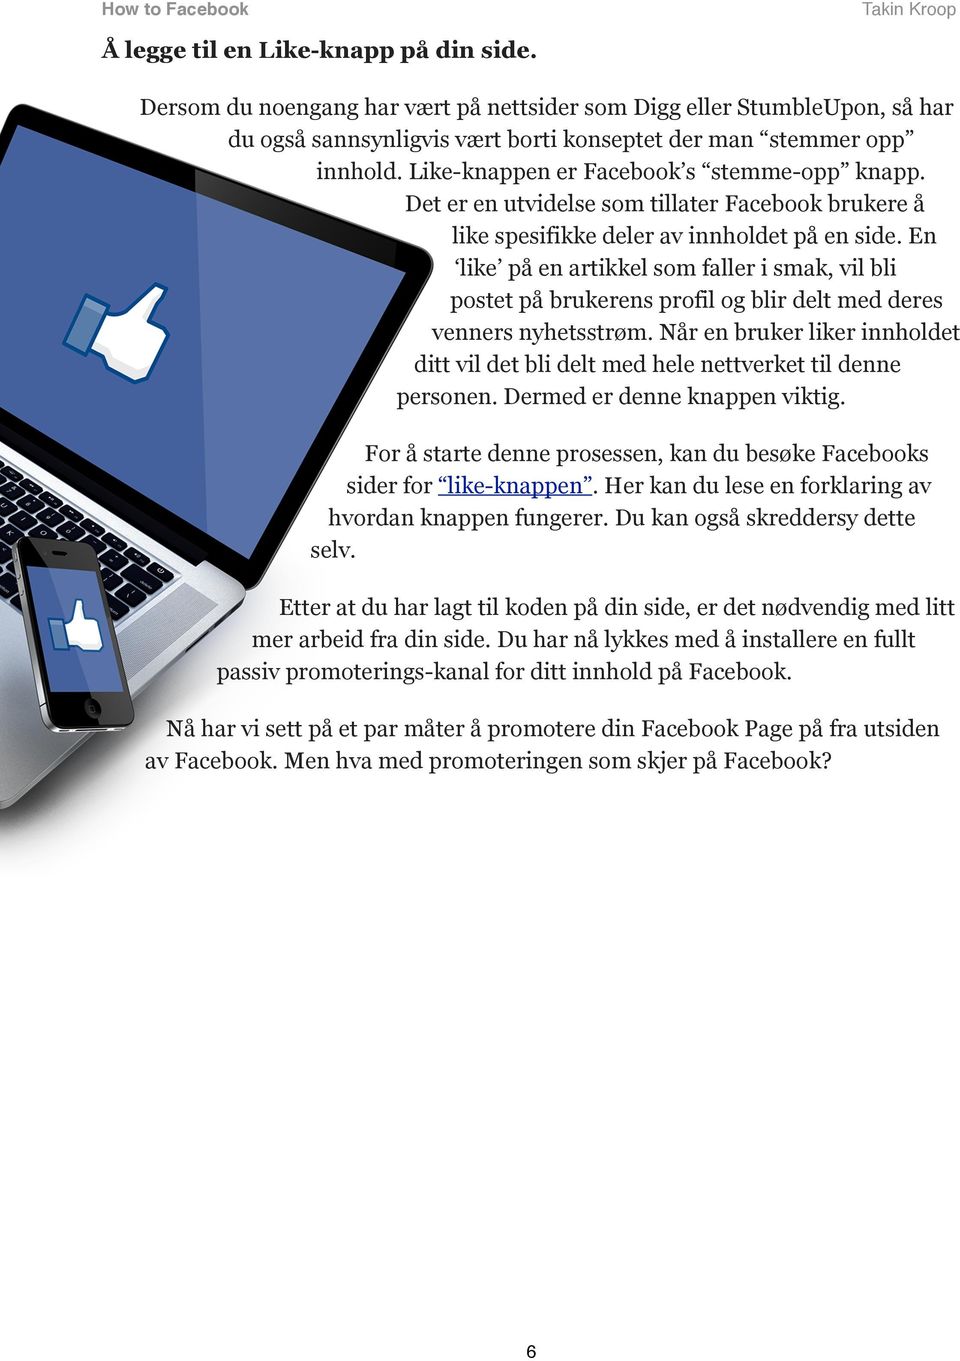 Det er en utvidelse som tillater Facebook brukere å like spesifikke deler av innholdet på en side.